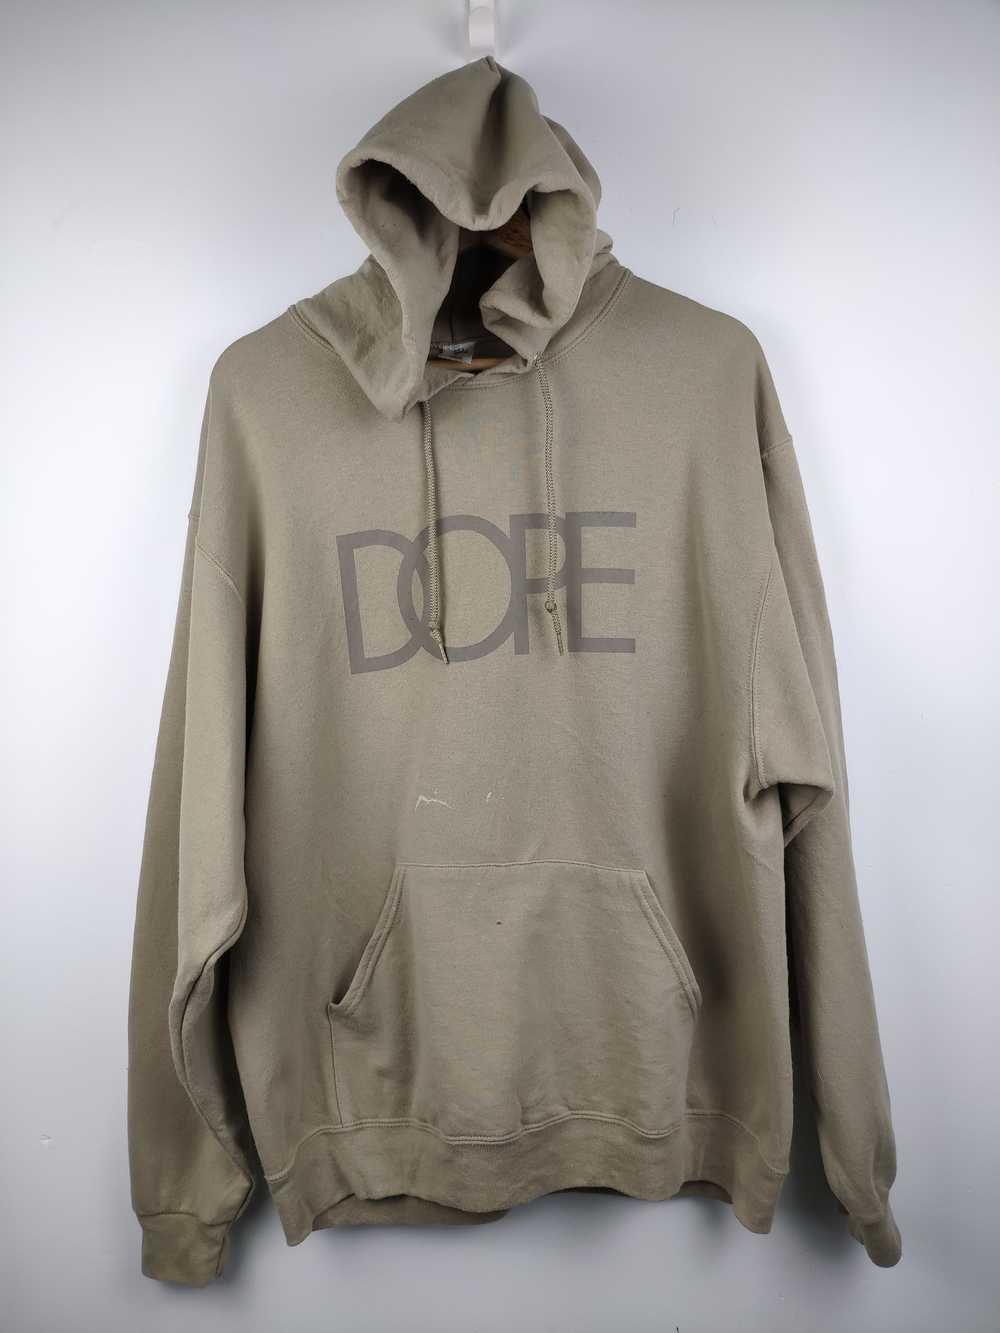 Dope - Vintage Dope Hoodie Pullover - image 1